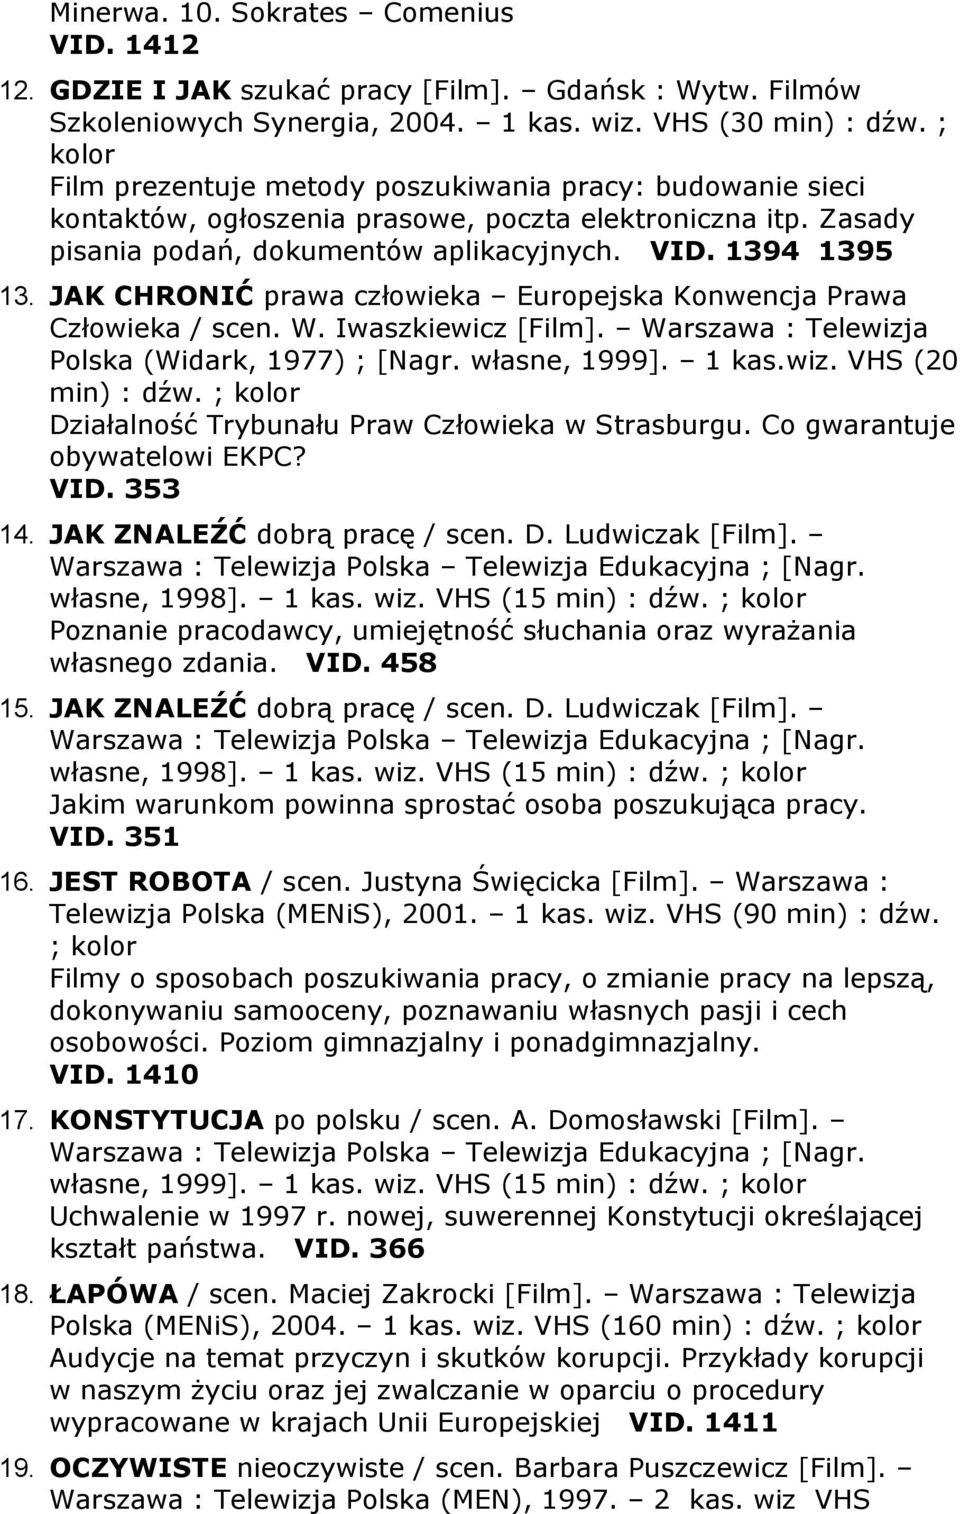 JAK CHRONIĆ prawa człowieka Europejska Konwencja Prawa Człowieka / scen. W. Iwaszkiewicz [Film]. Warszawa : Telewizja Polska (Widark, 1977) ; [Nagr. własne, 1999]. 1 kas.wiz. VHS (20 min) : dźw.